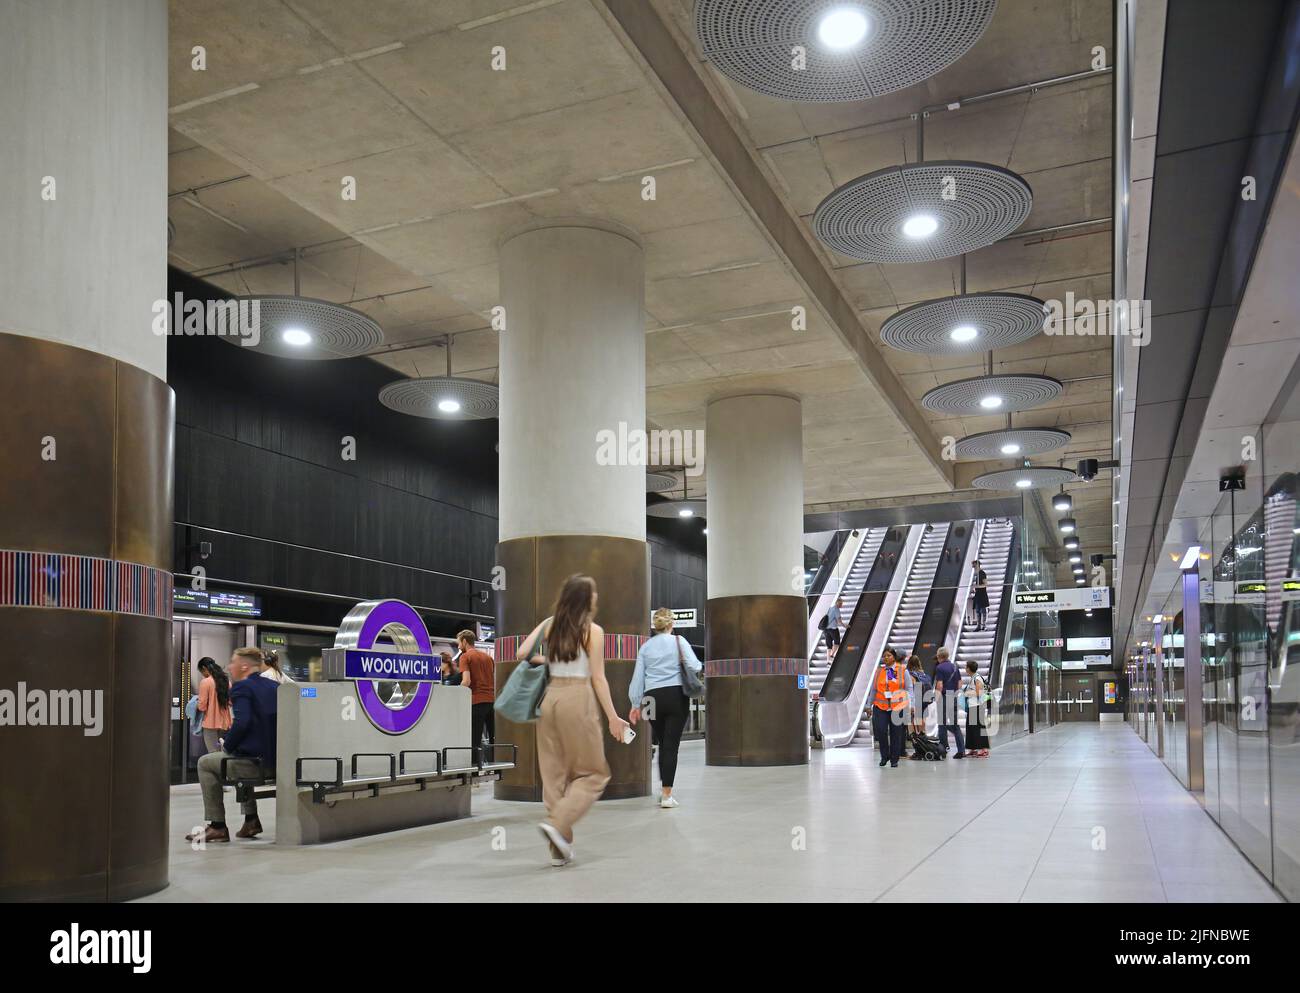 Londres, Reino Unido. Estación Woolwich en la recién inaugurada red de metro Elizabeth Line (tren cruzado). A nivel de la plataforma, muestra el tren y las escaleras mecánicas. Foto de stock